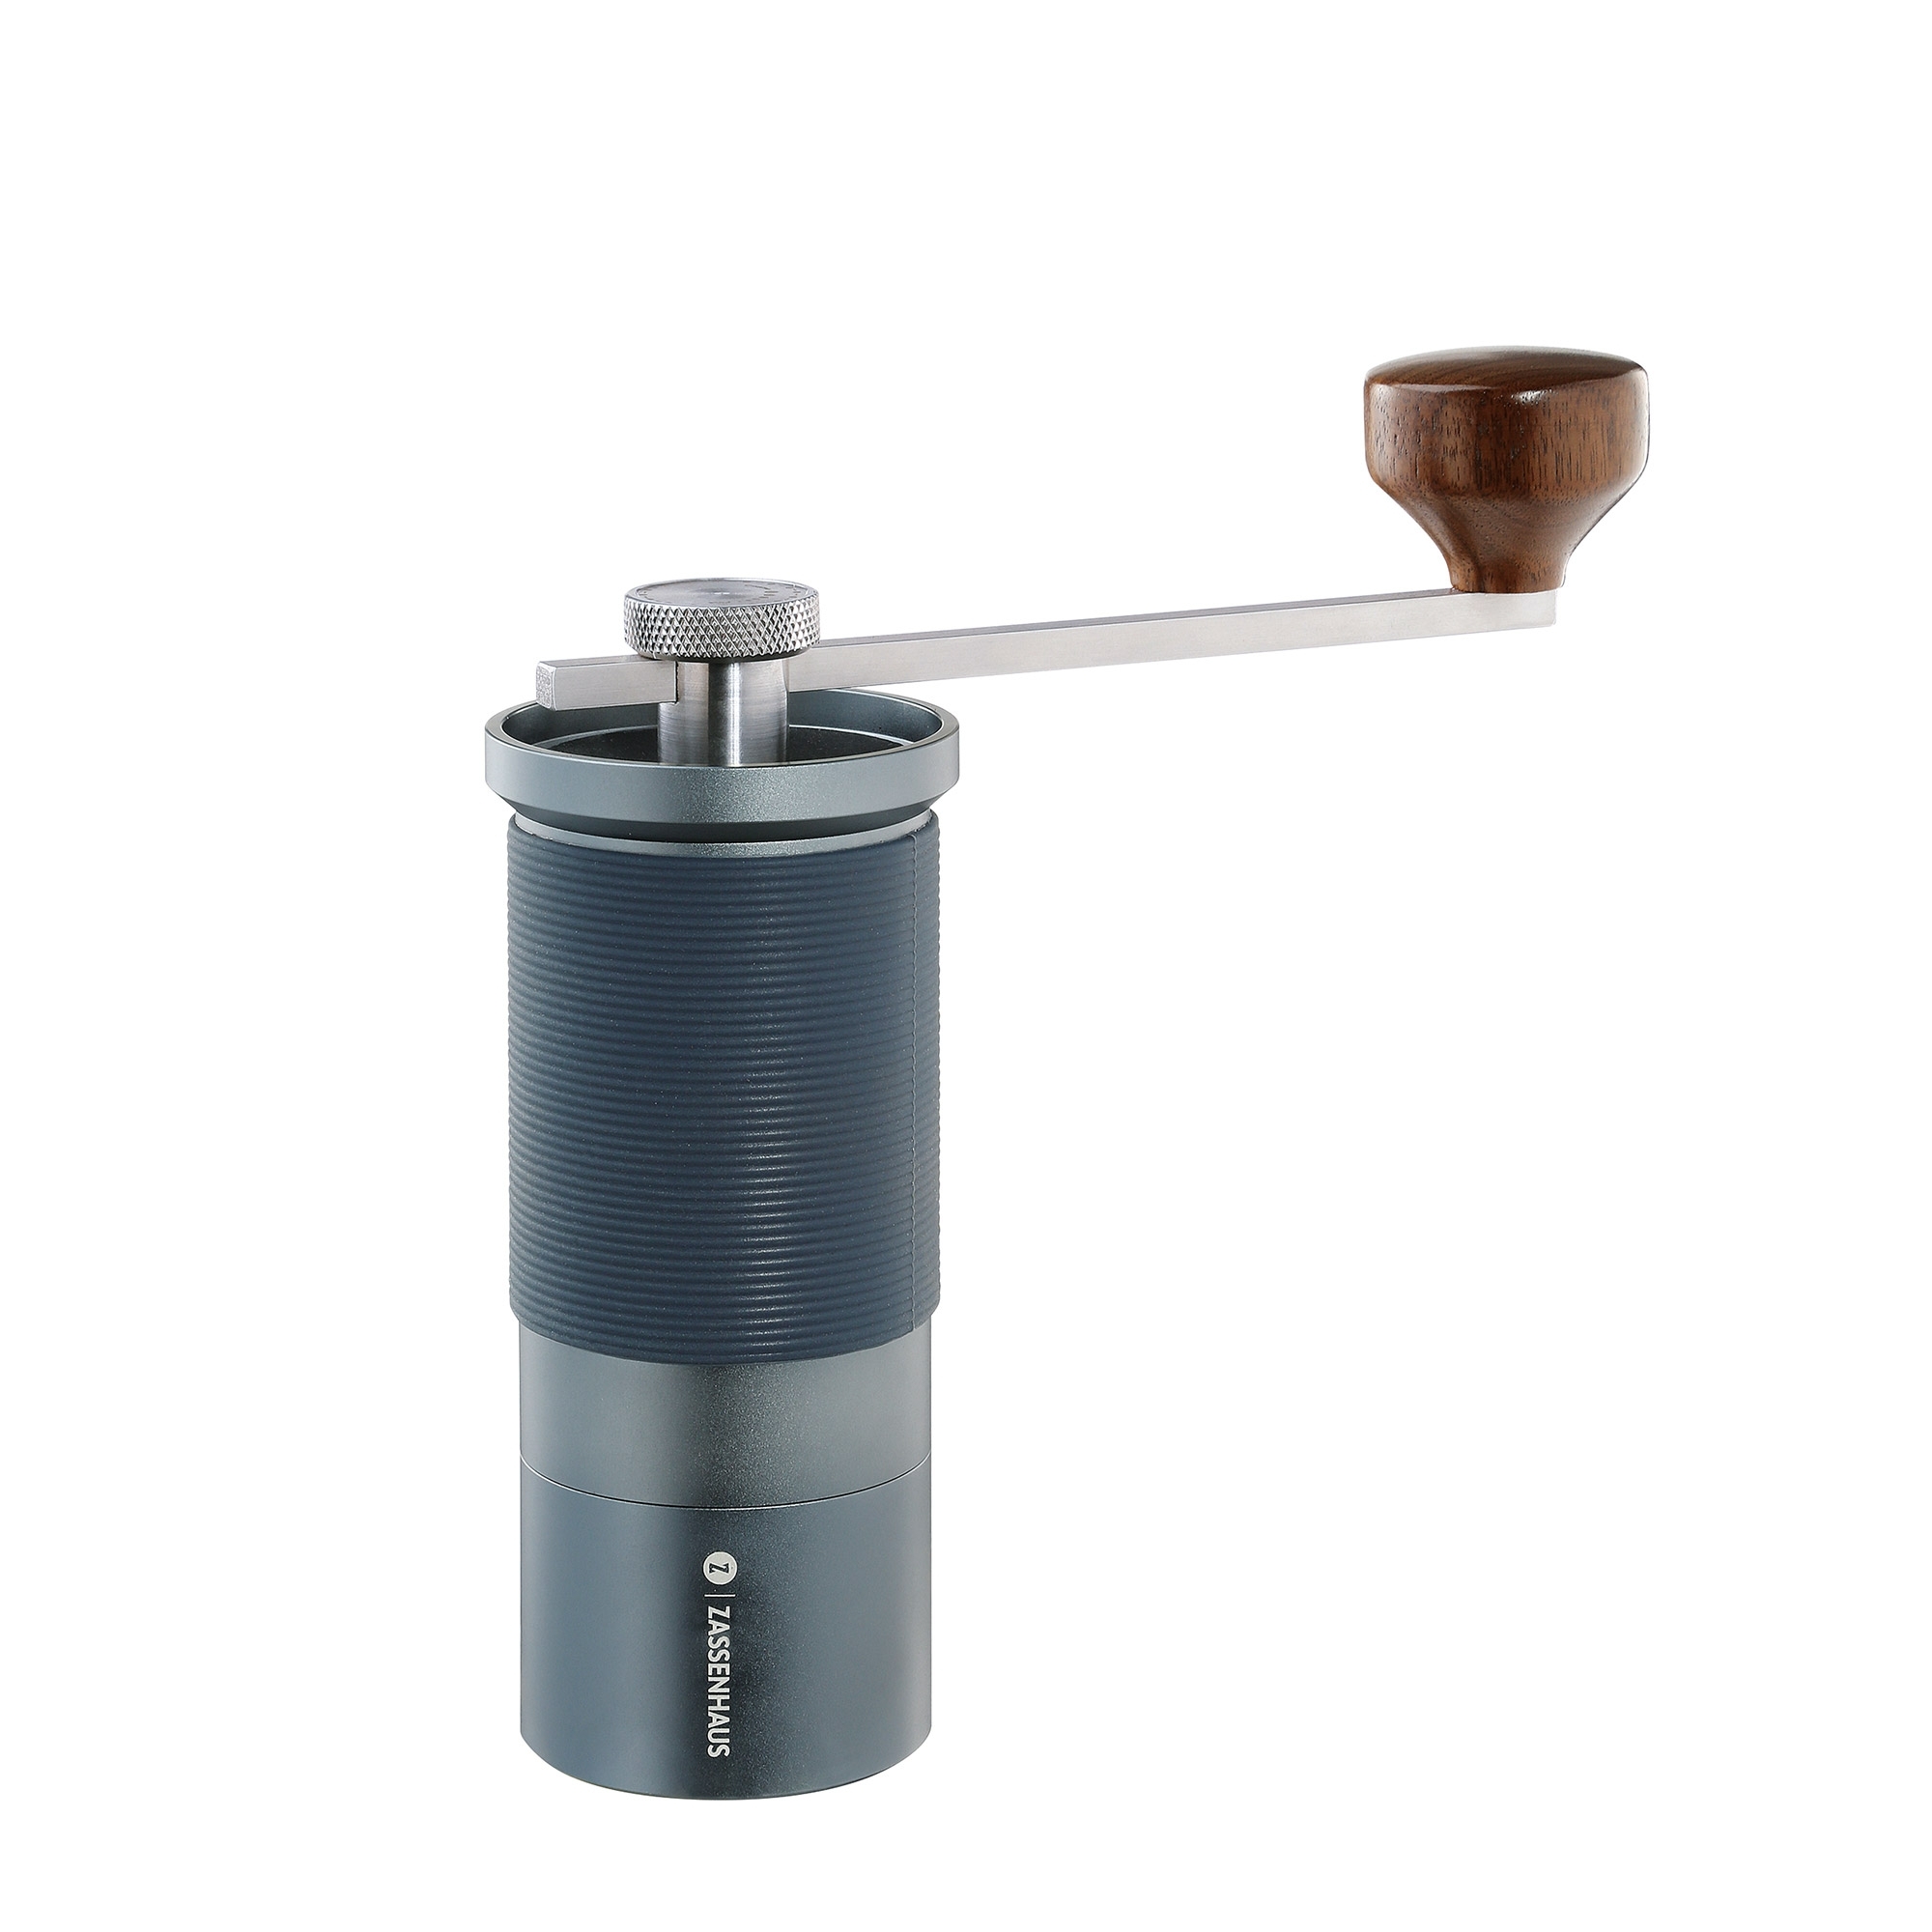 Zassenhaus - MASTER coffee grinder/espresso grinder